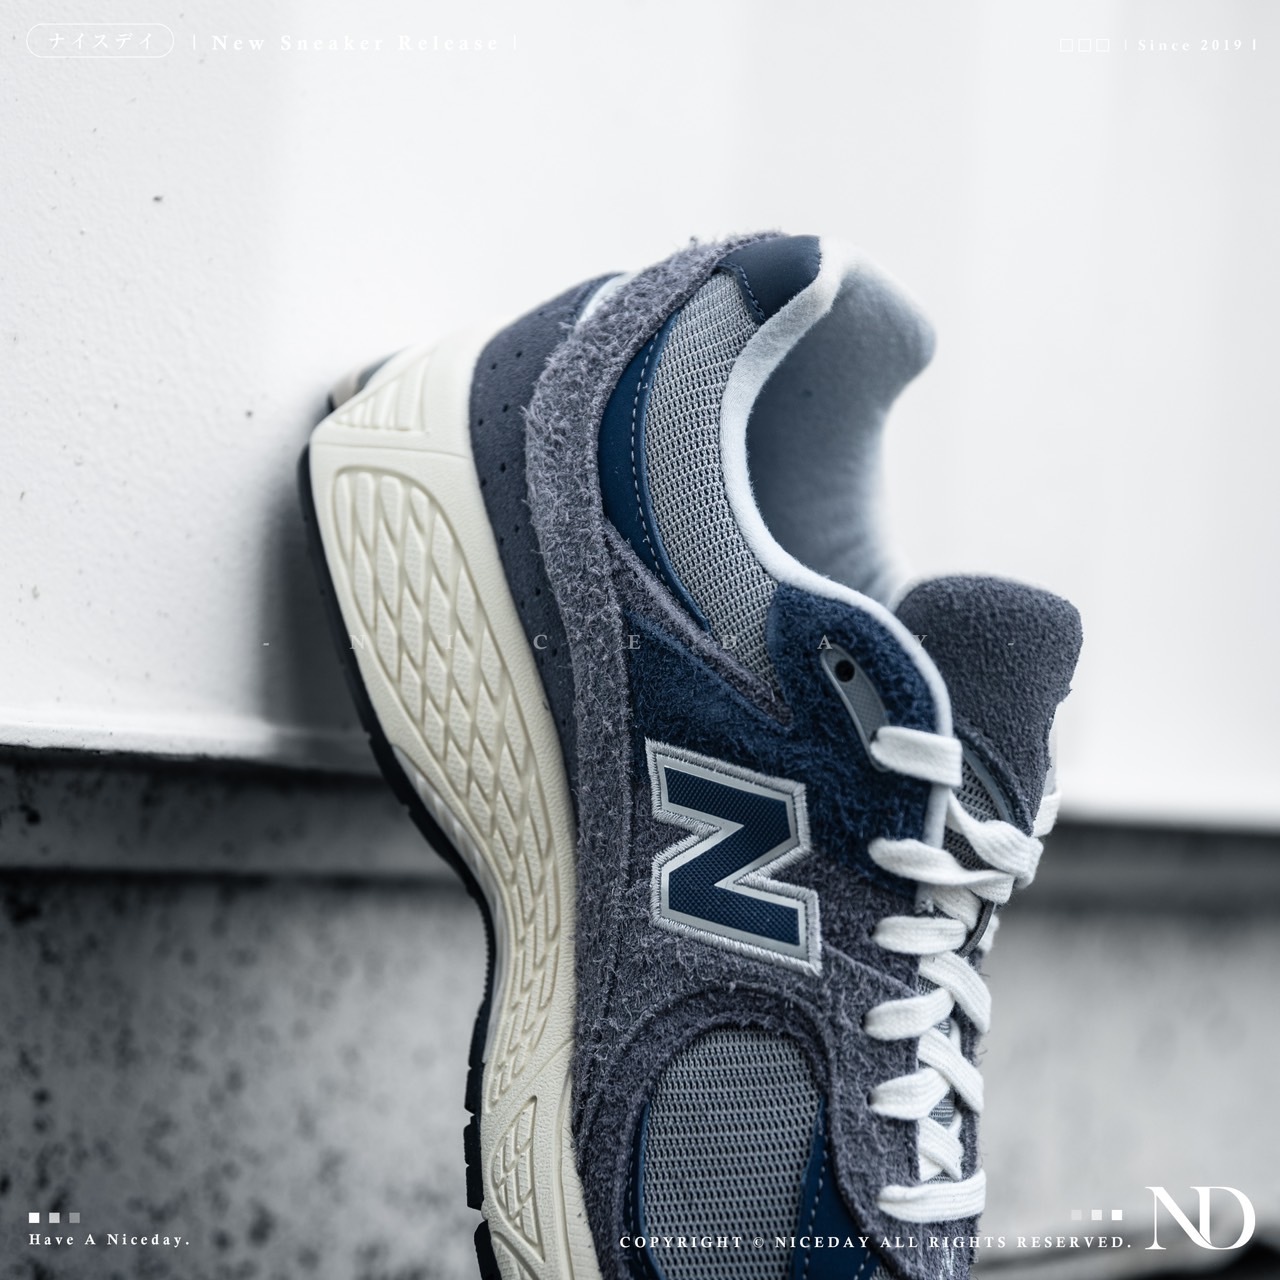 NICEDAY 現貨New Balance Gore-tex 海軍藍男女尺寸情侶鞋M2002RXK